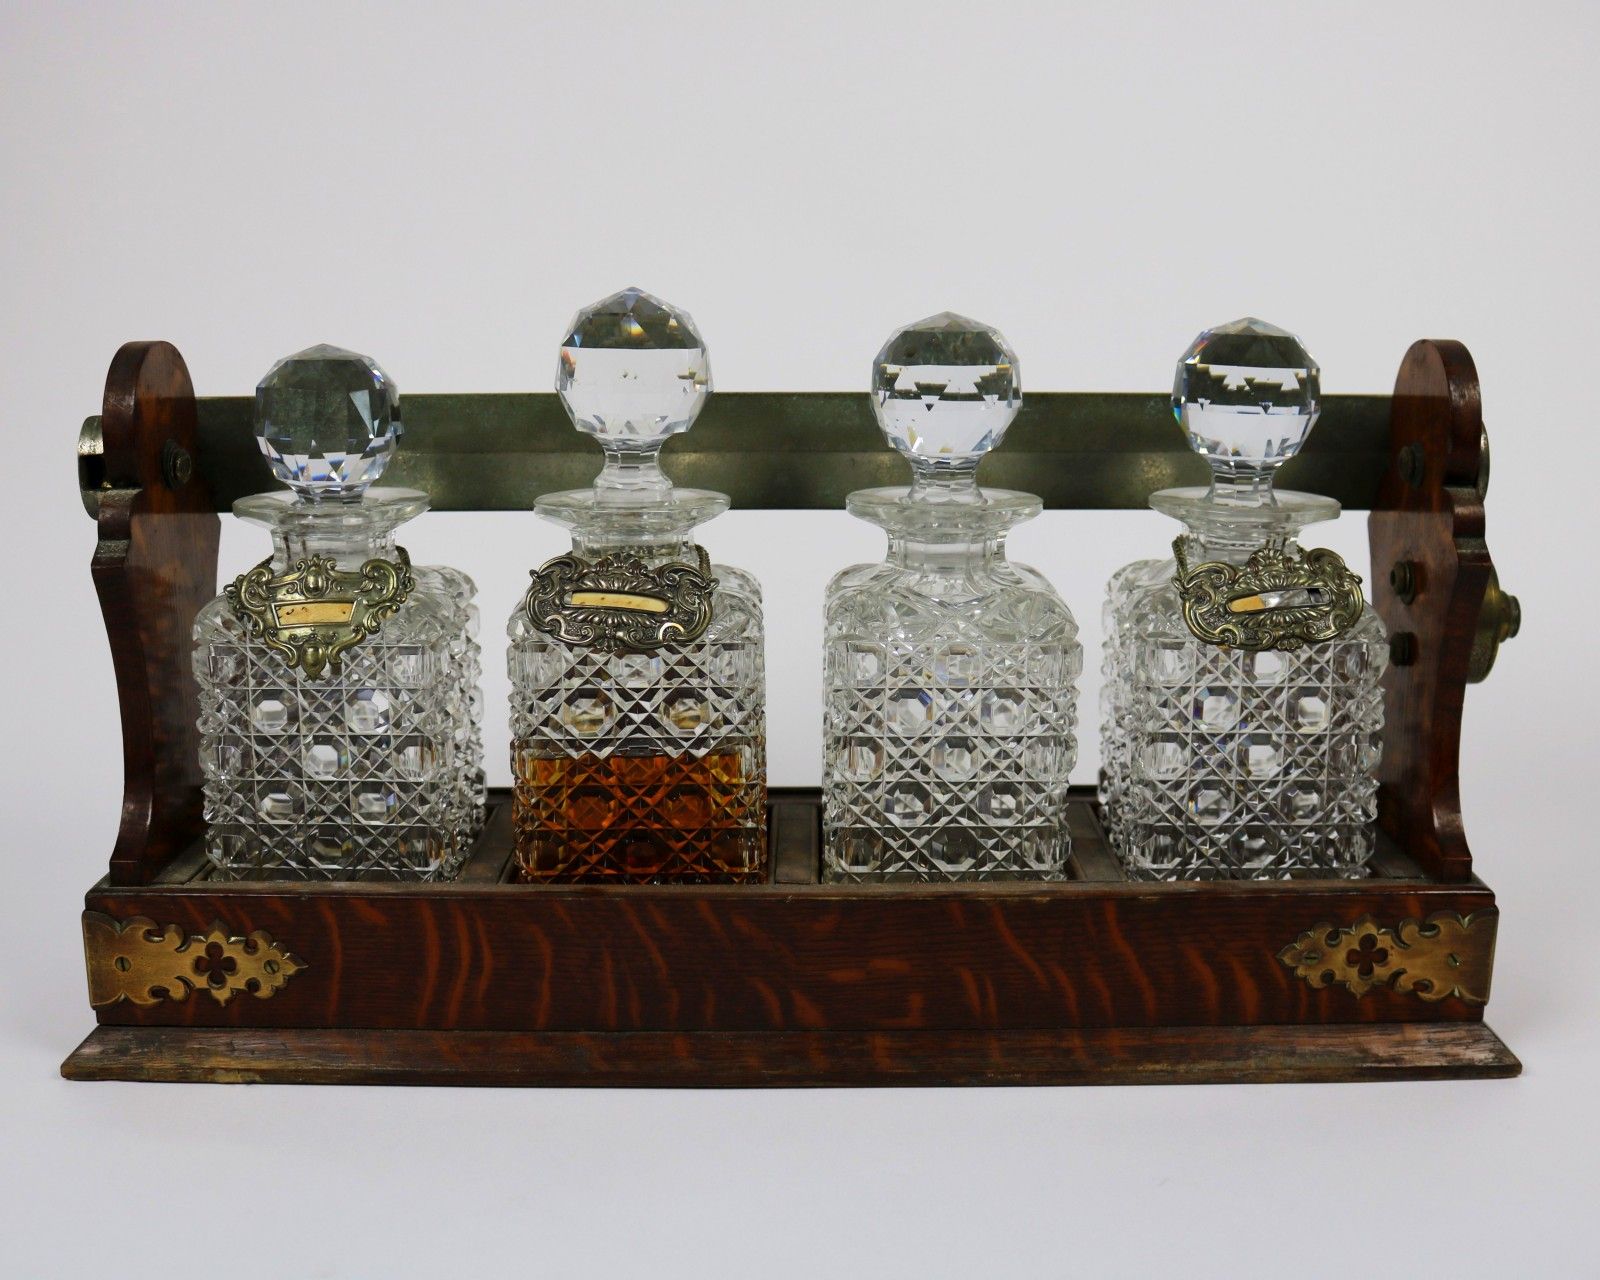 Null Expositor de alcohol

cuatro decantadores de cristal tallado en un exposito&hellip;